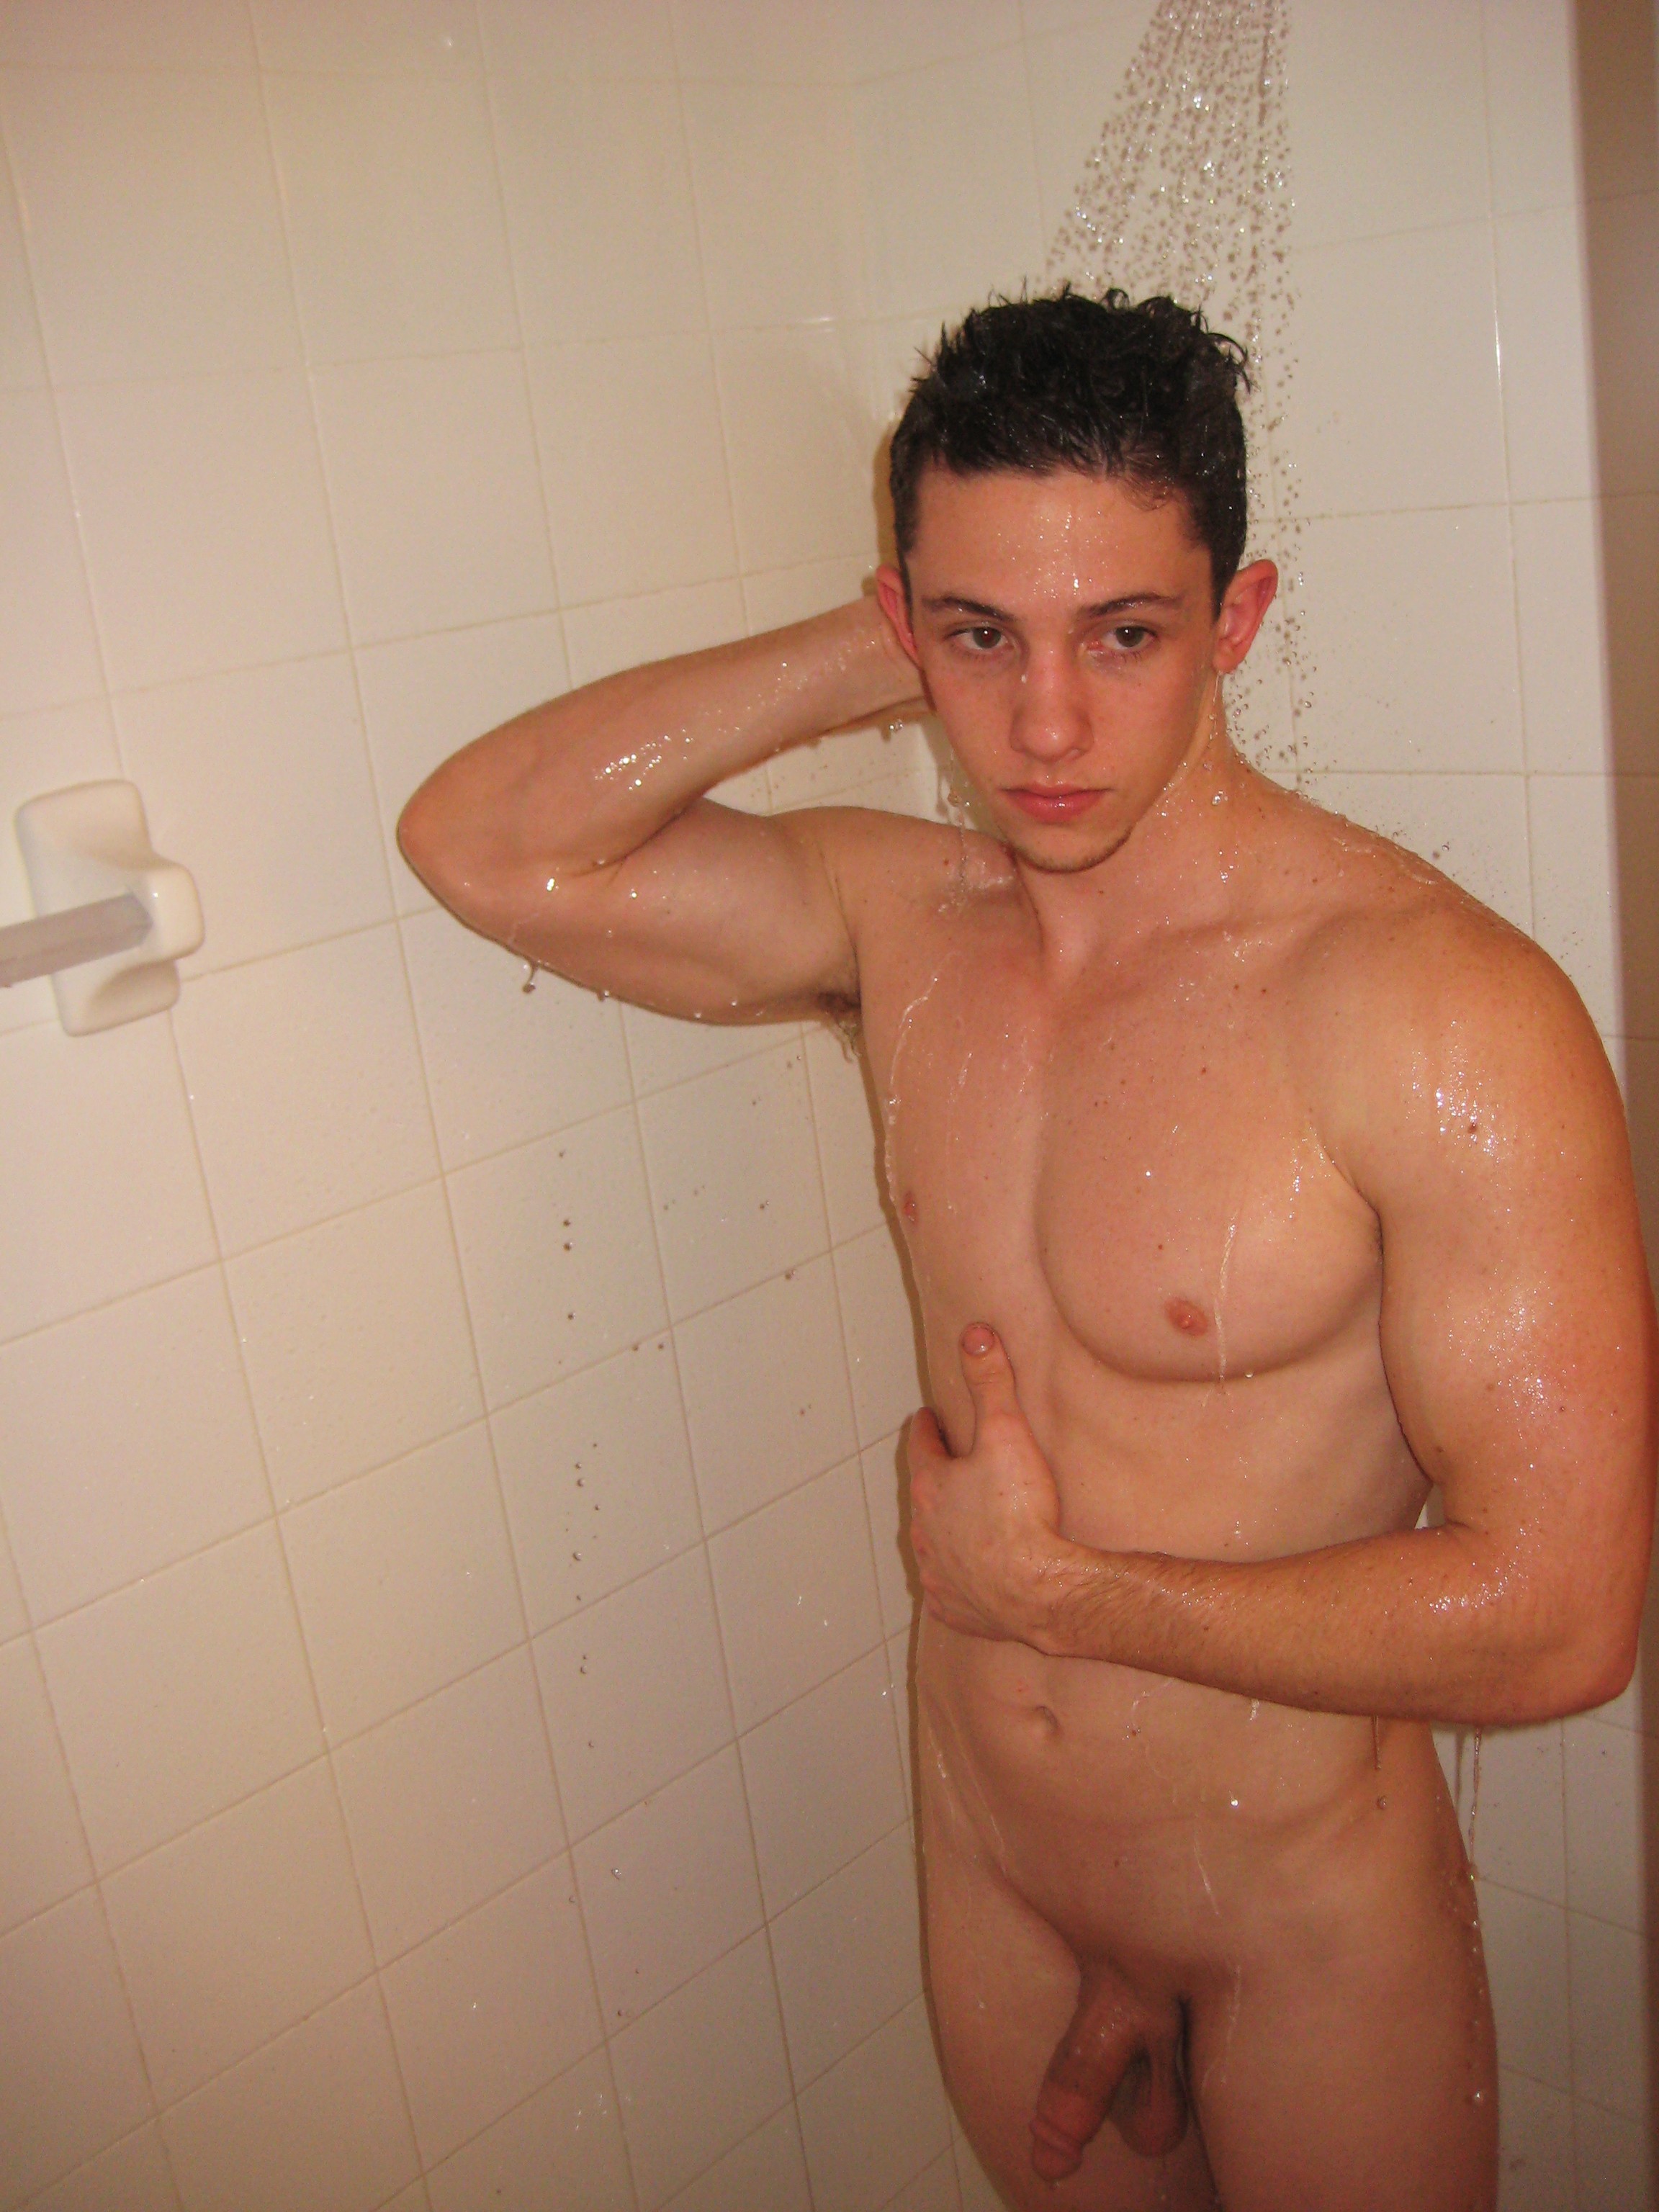 2304px x 3072px - Shower boys nude wet wild porn